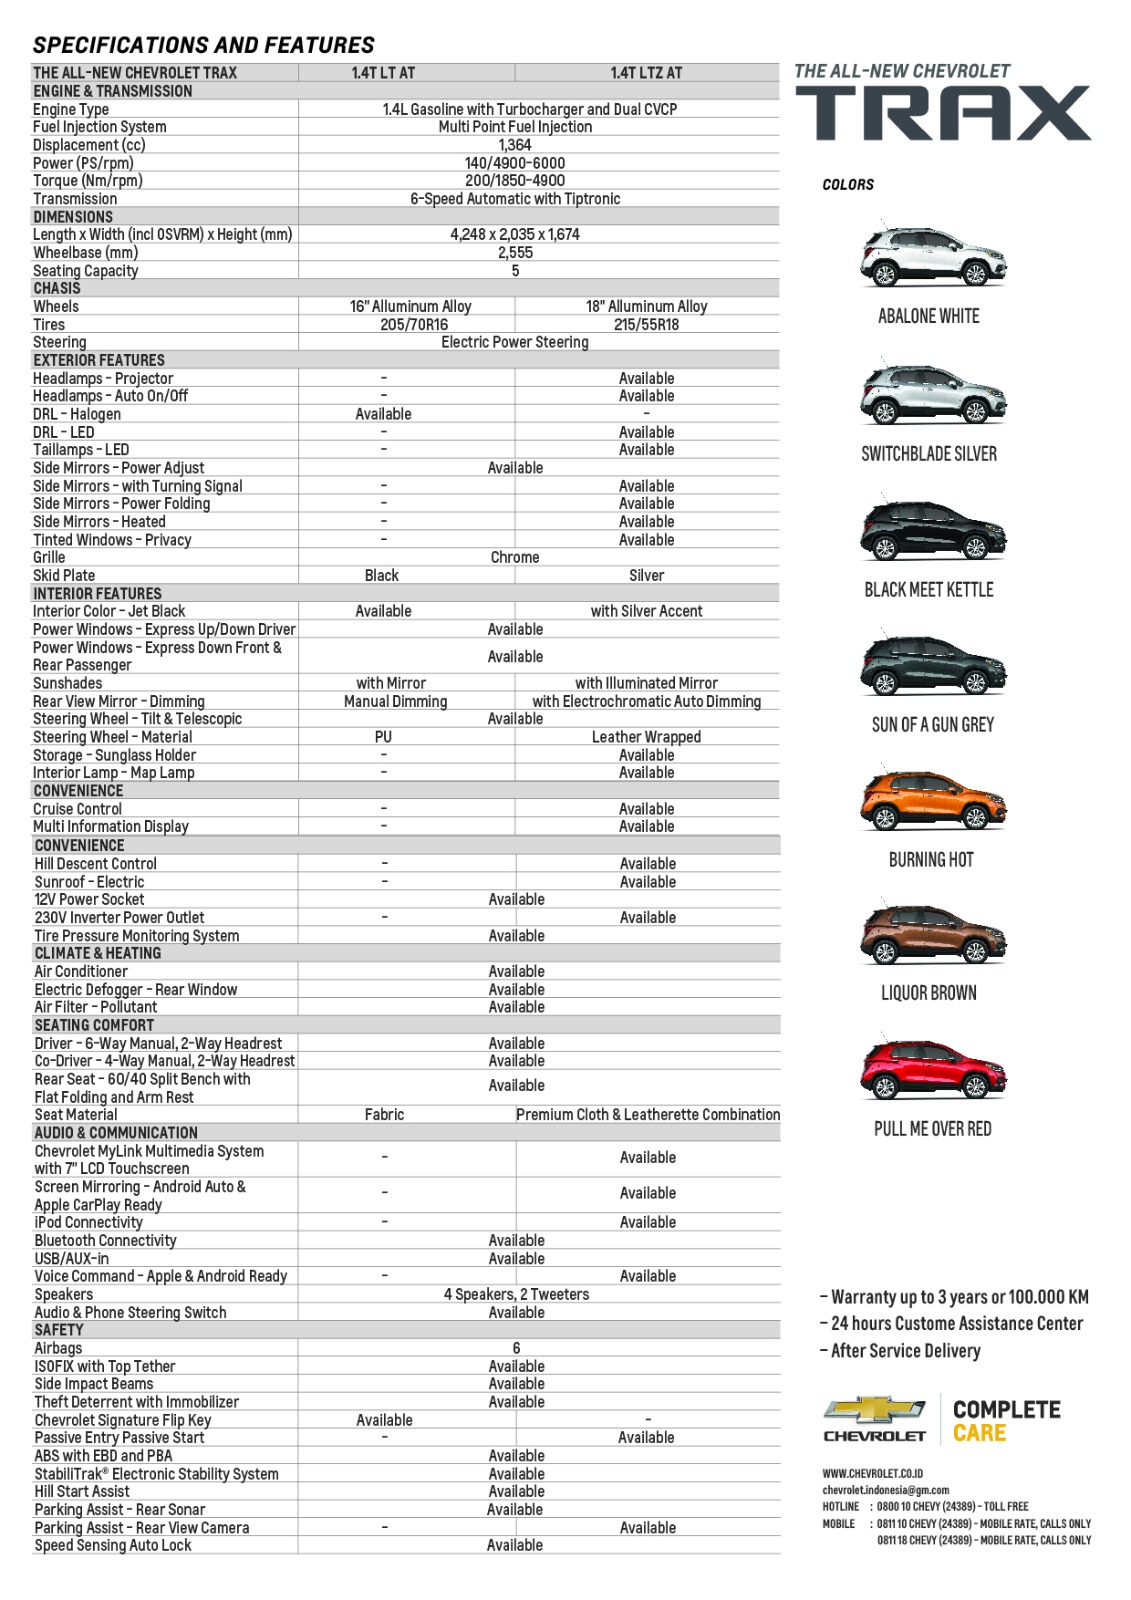 Chevrolet, IMG-20170223-WA0055: All New Chevrolet Trax dan Spark Baru Punya Fitur Yang Cukup Menjanjikan!